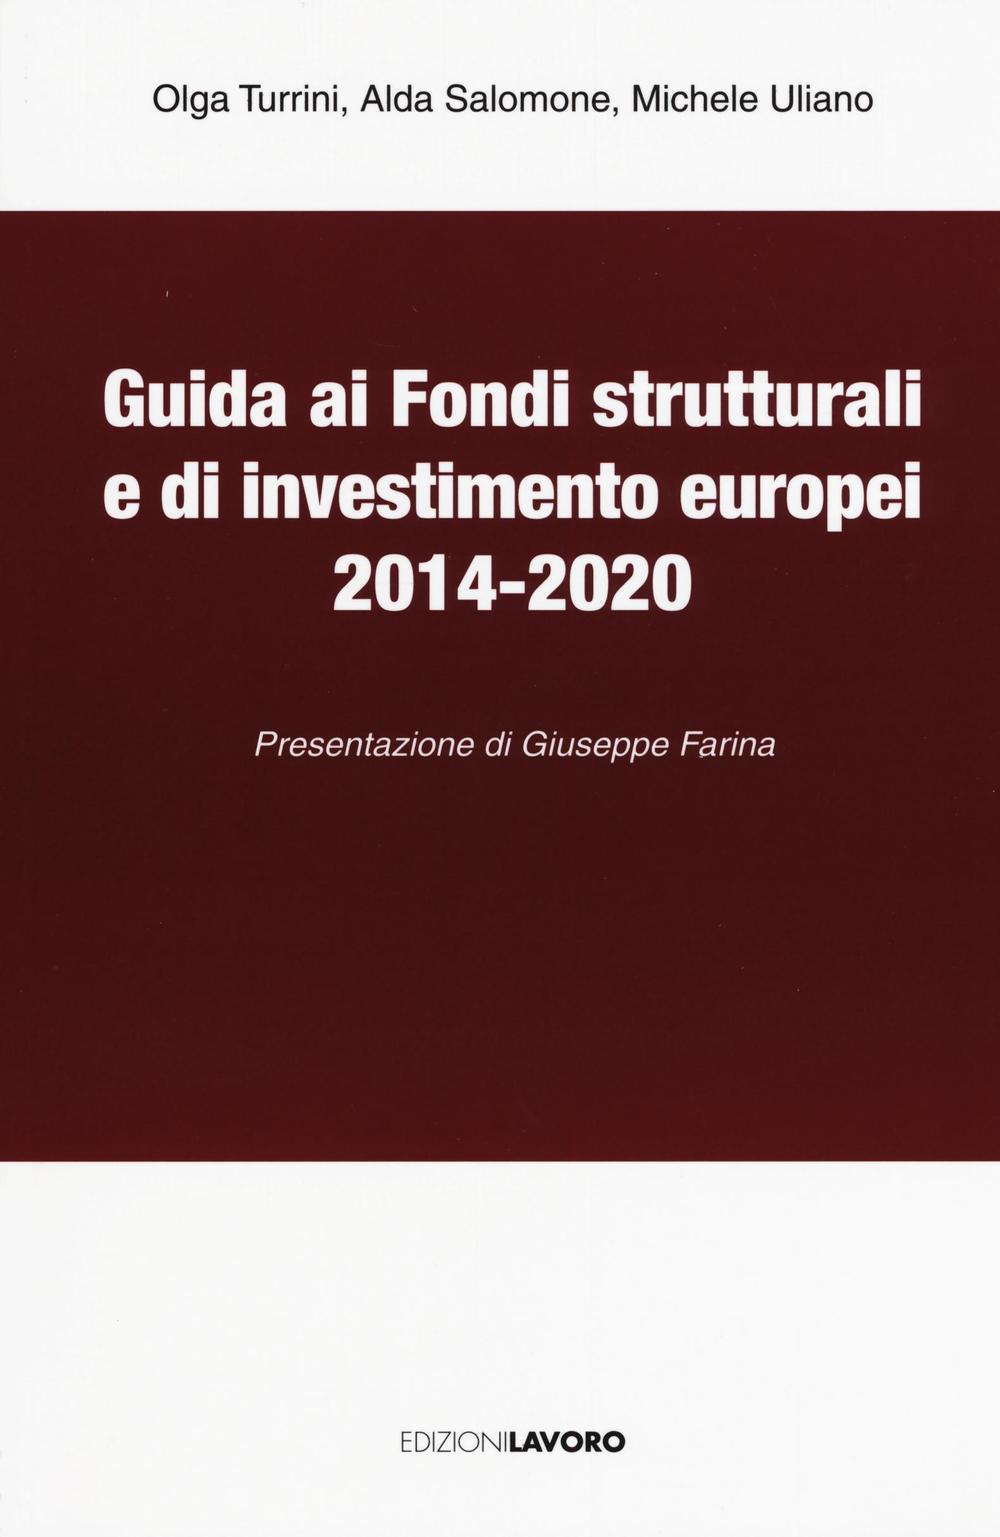 Guida ai fondi strutturali e di investimento europei 2014-2020